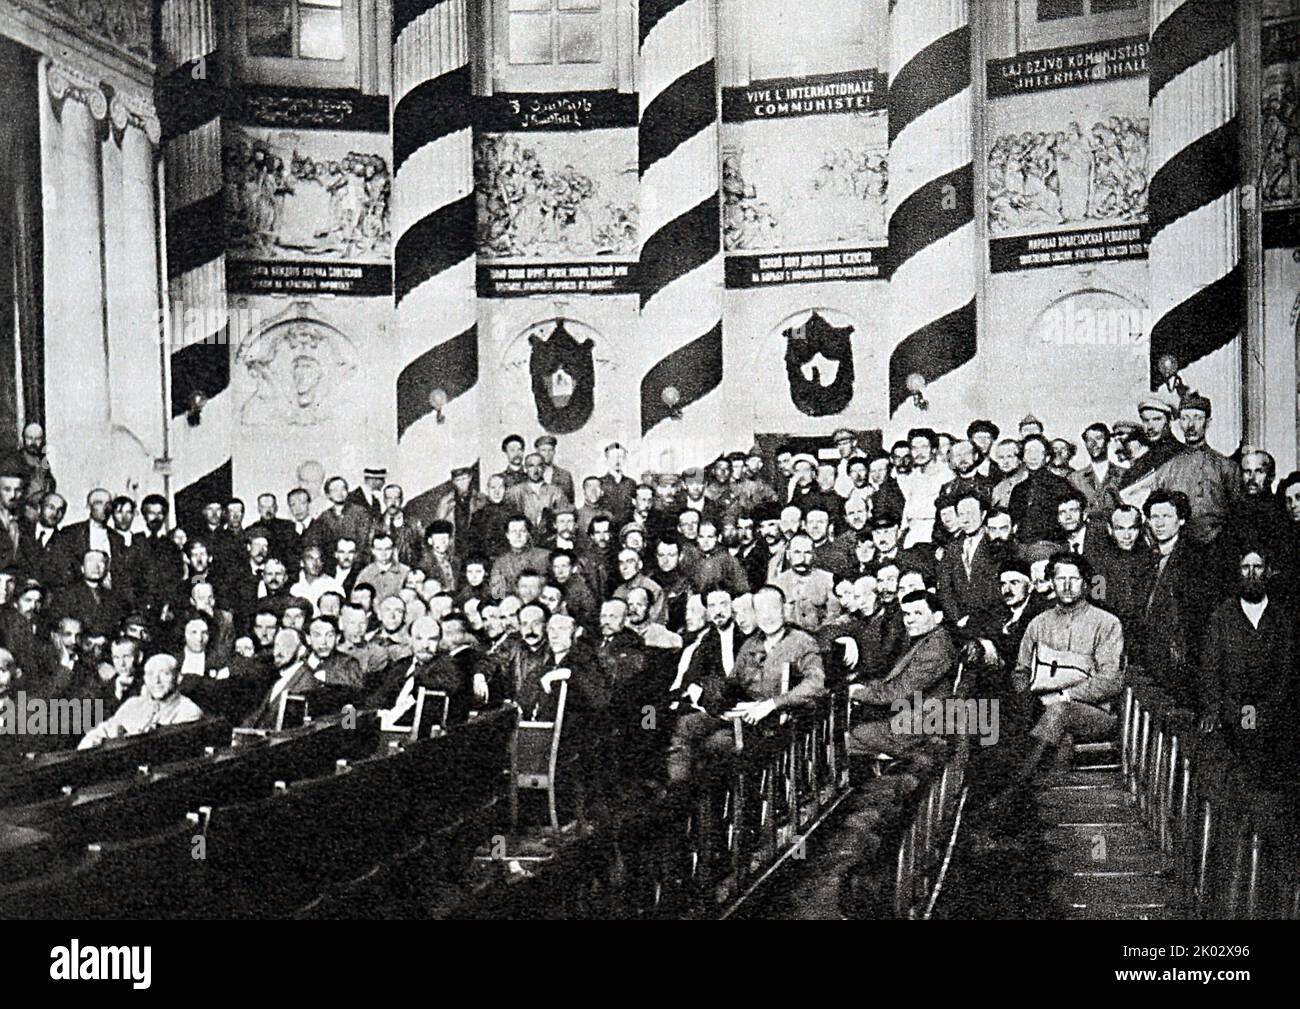 Wladimir Lenin unter den Delegierten der Zehnten Allrussischen Konferenz der Kommunistischen Partei Russlands im Swerdlowsker Saal des Kremls. 1921. Moskau. Fotograf nicht identifiziert. Stockfoto